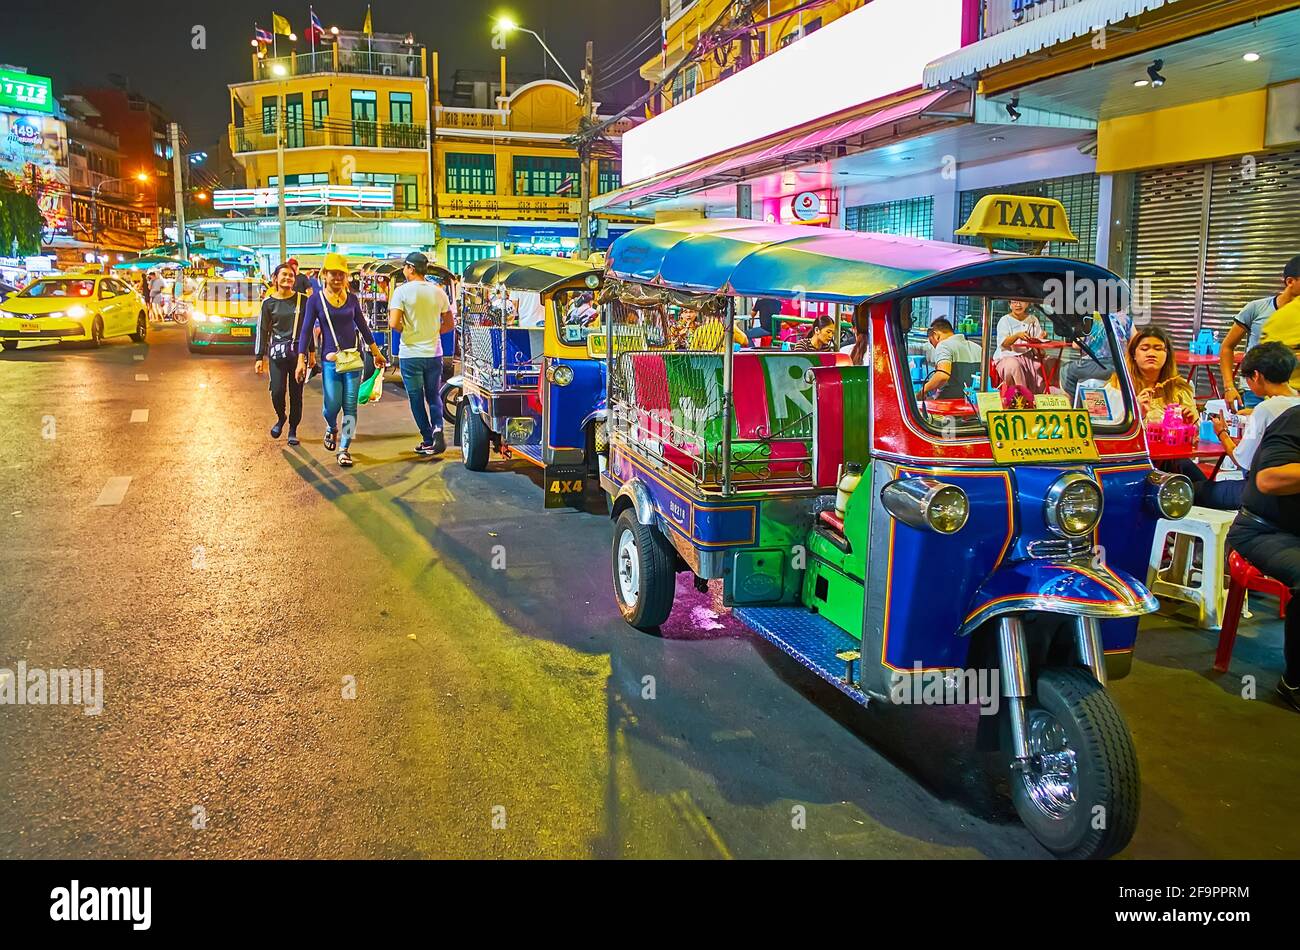 BANGKOK, THAILAND - MAY 11, 2019: The tuk tuk parking in crowded and noisy Khaosan Road with shops,  cafes and bars, on May 11 in Bangkok Stock Photo